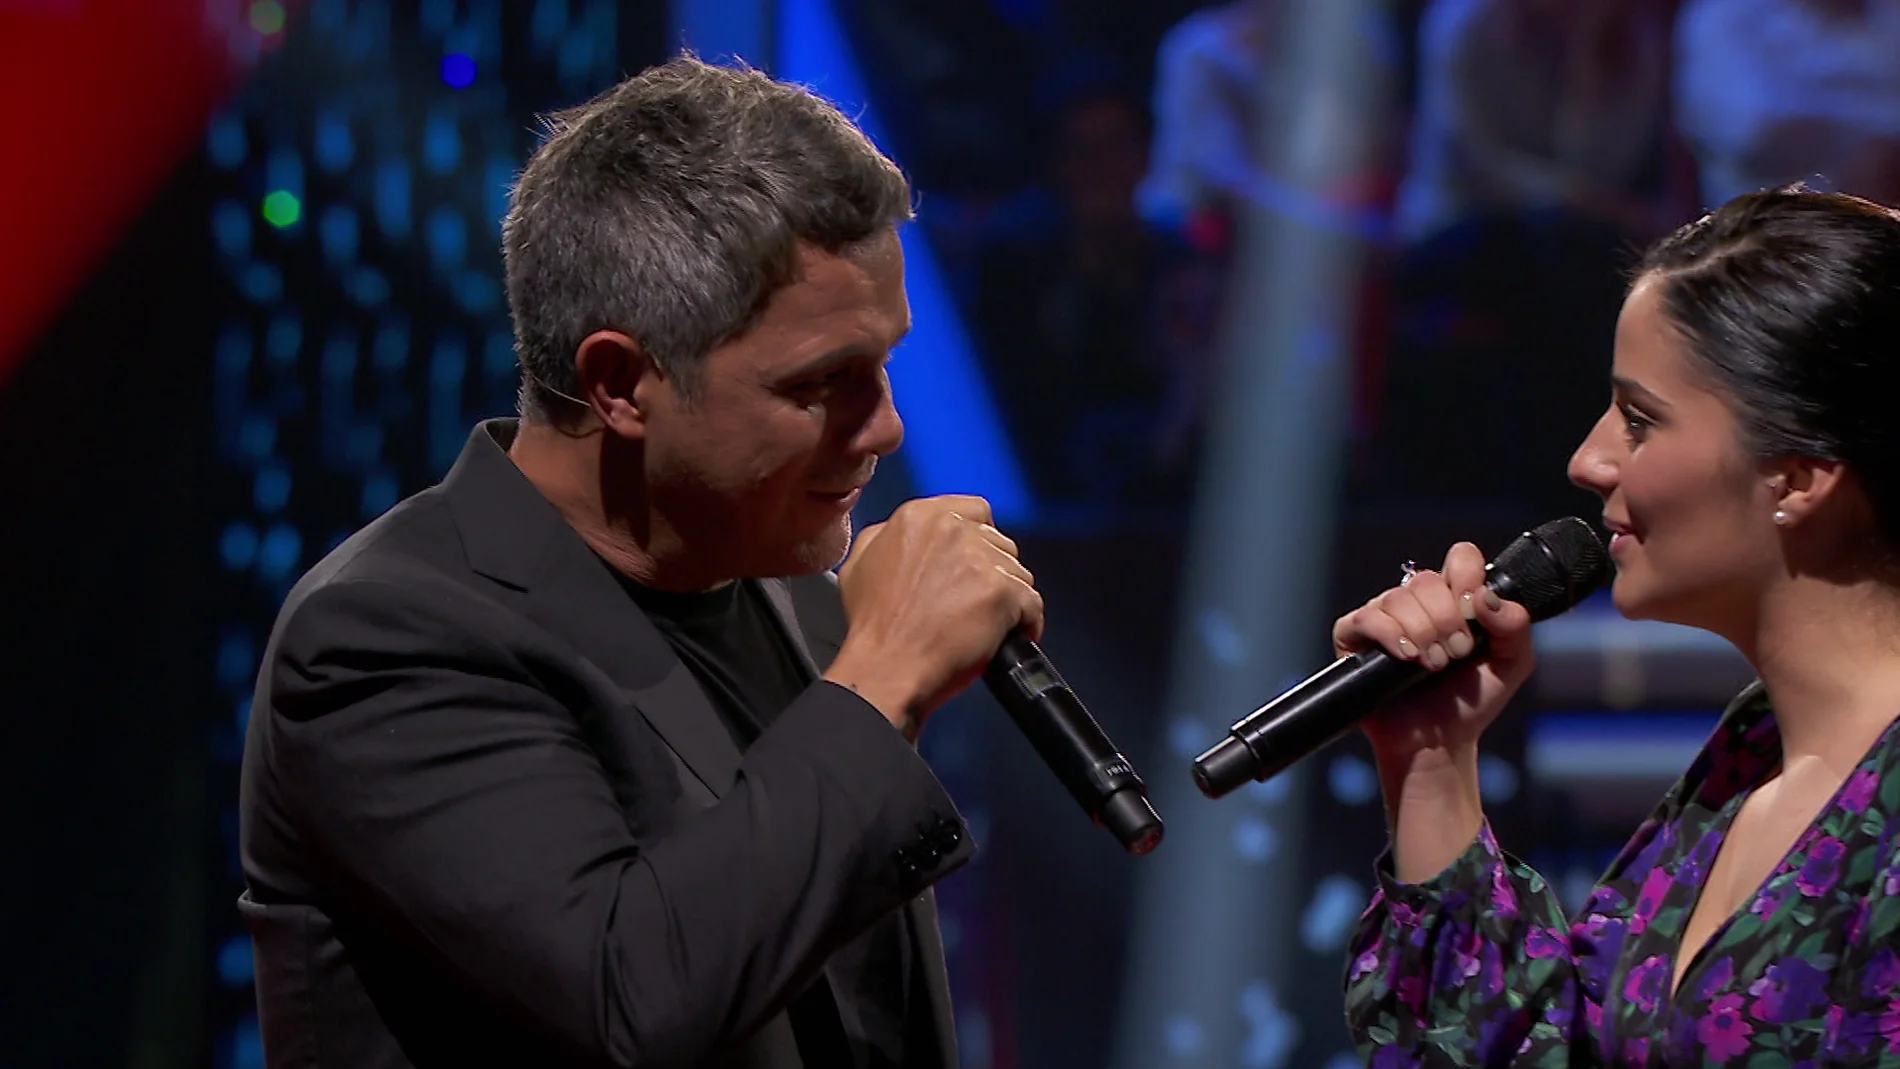 Alejandro Sanz y María Cortés protagonizan el momentazo de la noche cantando juntos ‘Cuando nadie me ve’ en ‘La Voz’